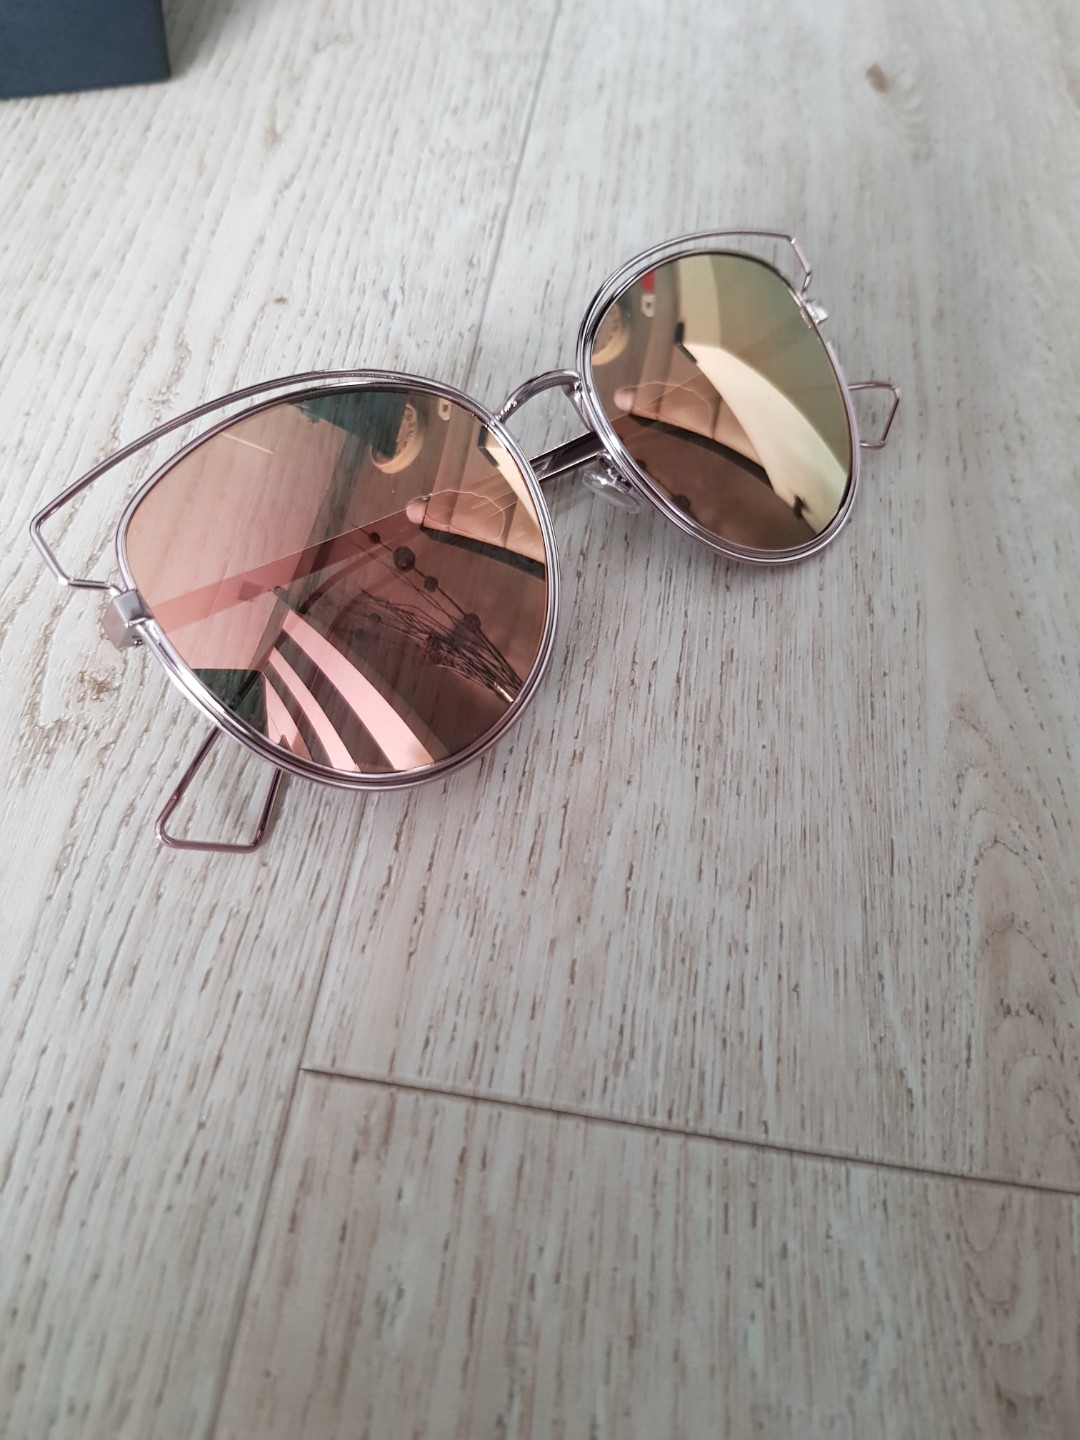 dior sunglasses 2018 women's